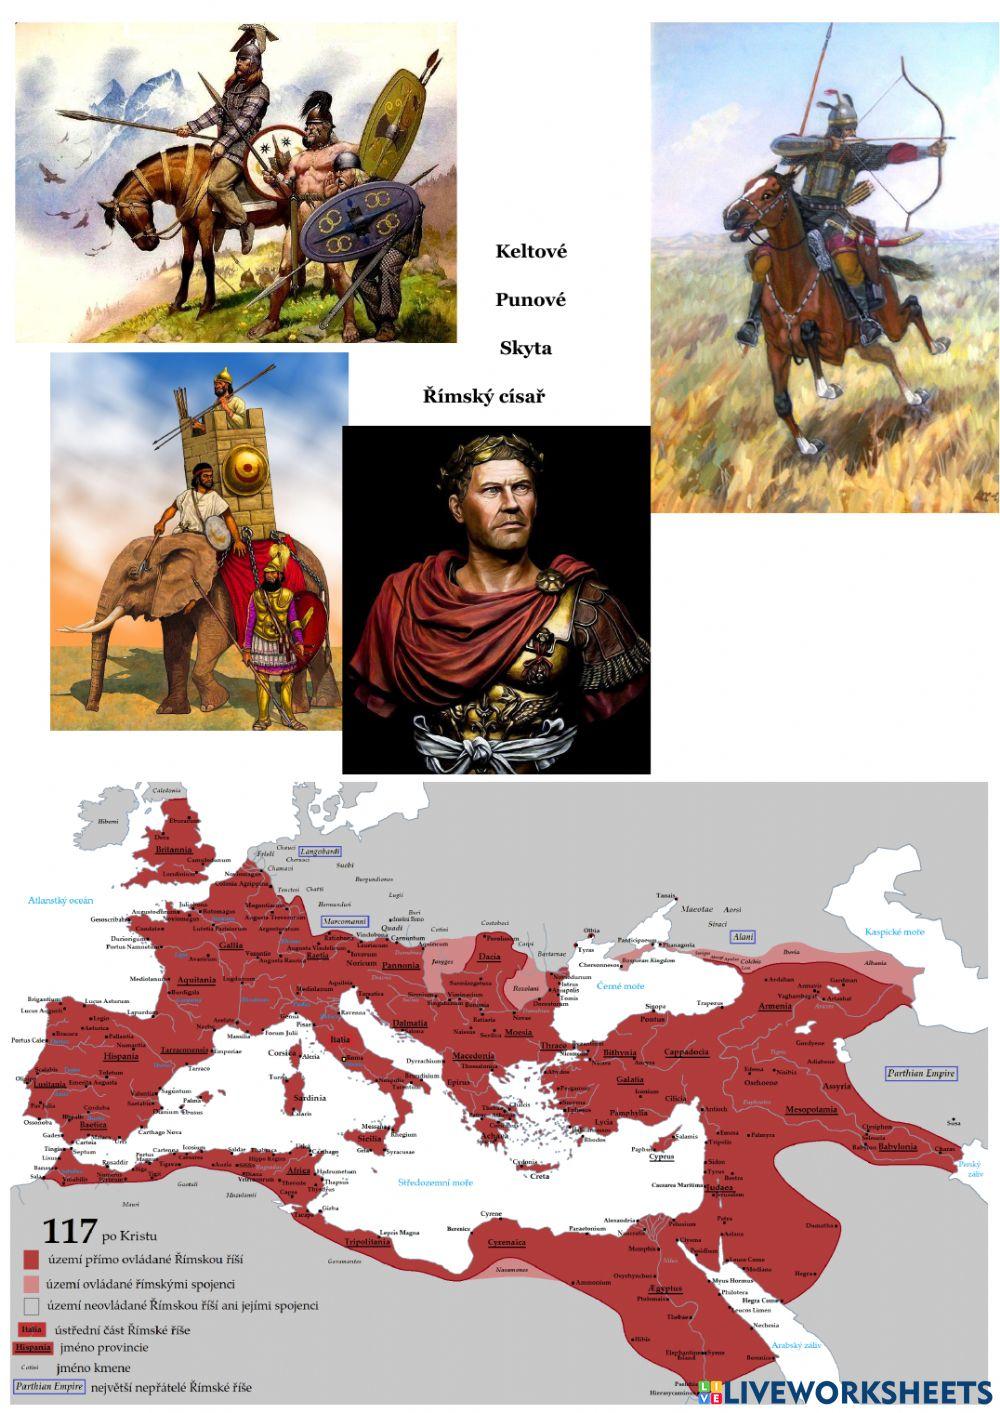 Římská říše - občané a barbaři